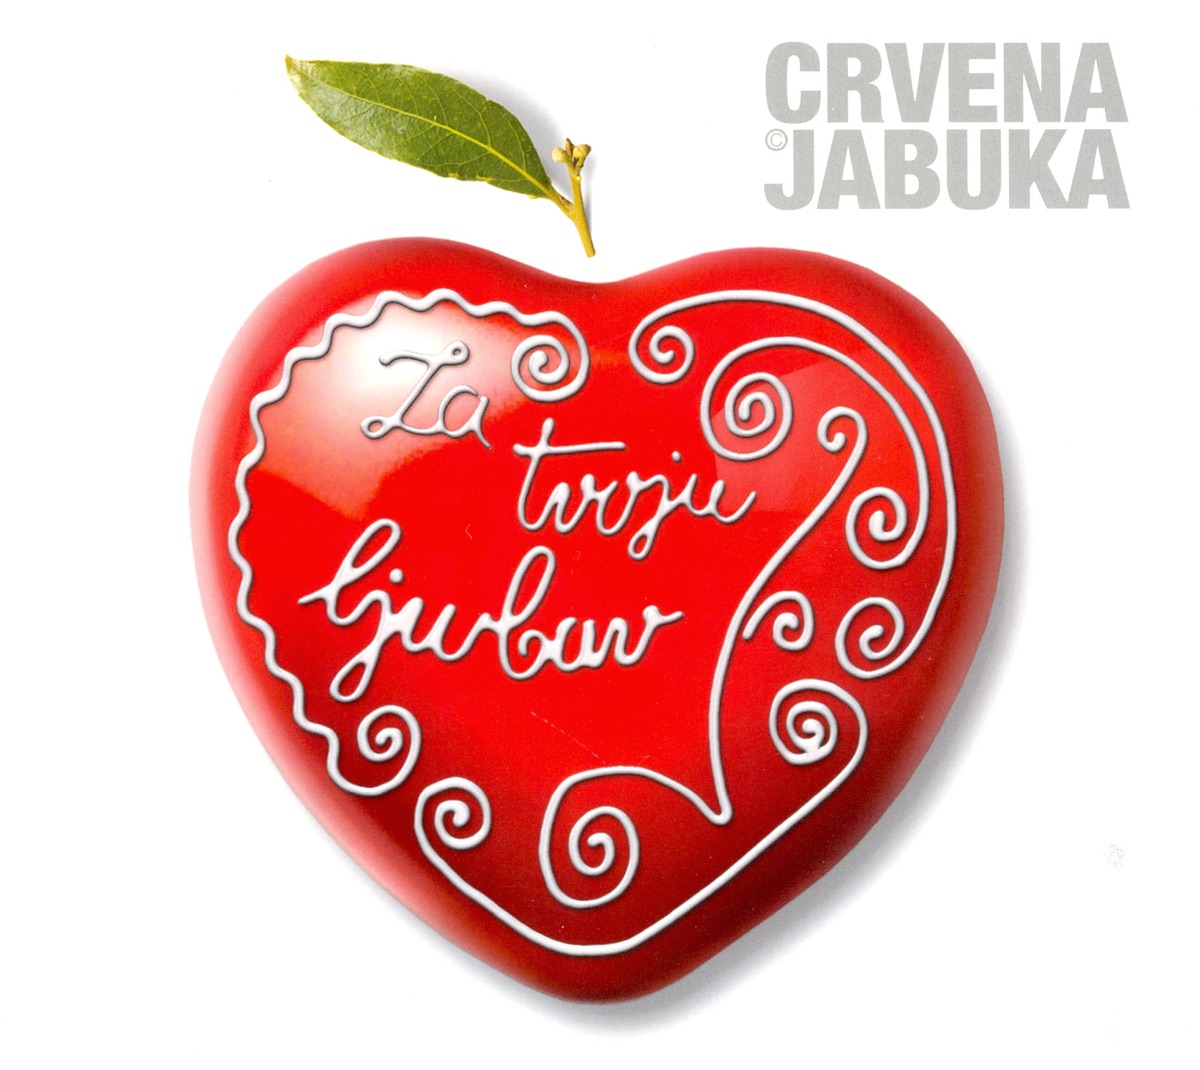 crvena jabuka 2013 novi album download